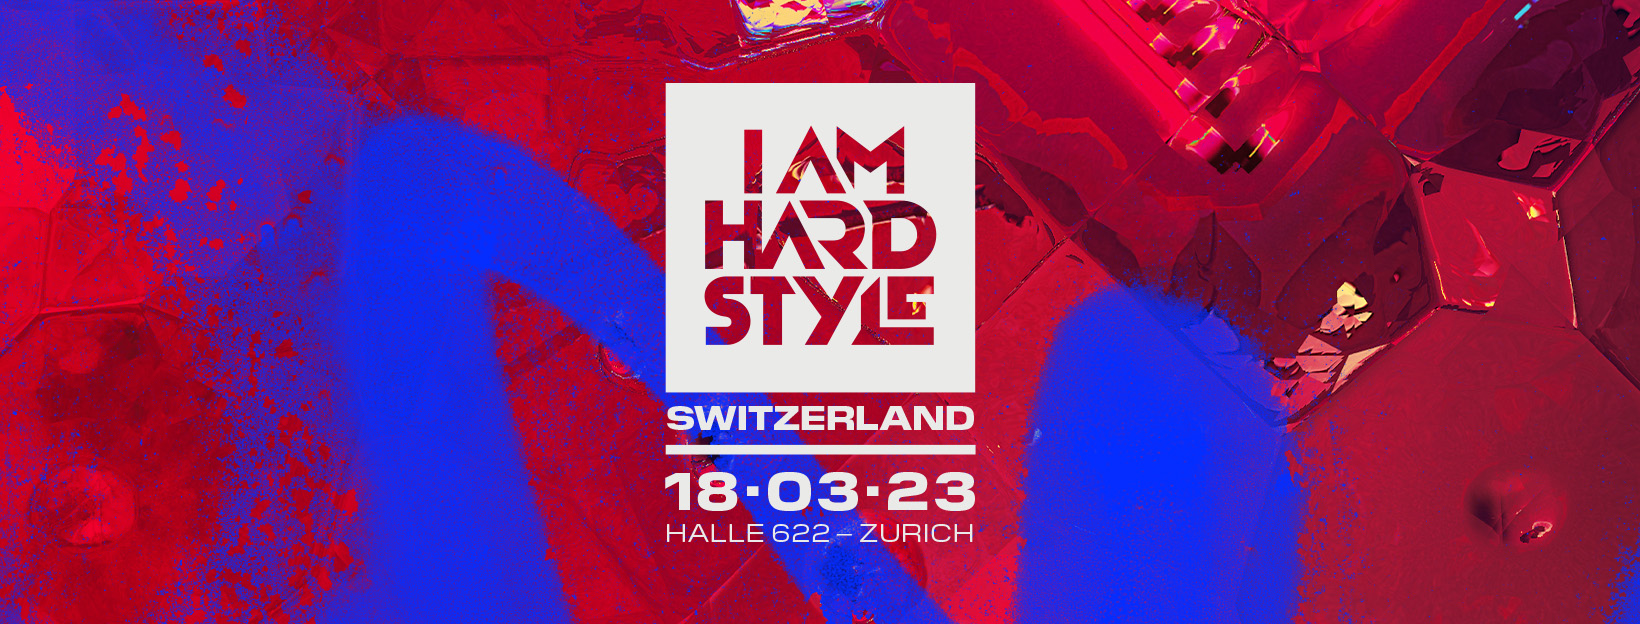 I Am Hardstyle - Switzerland